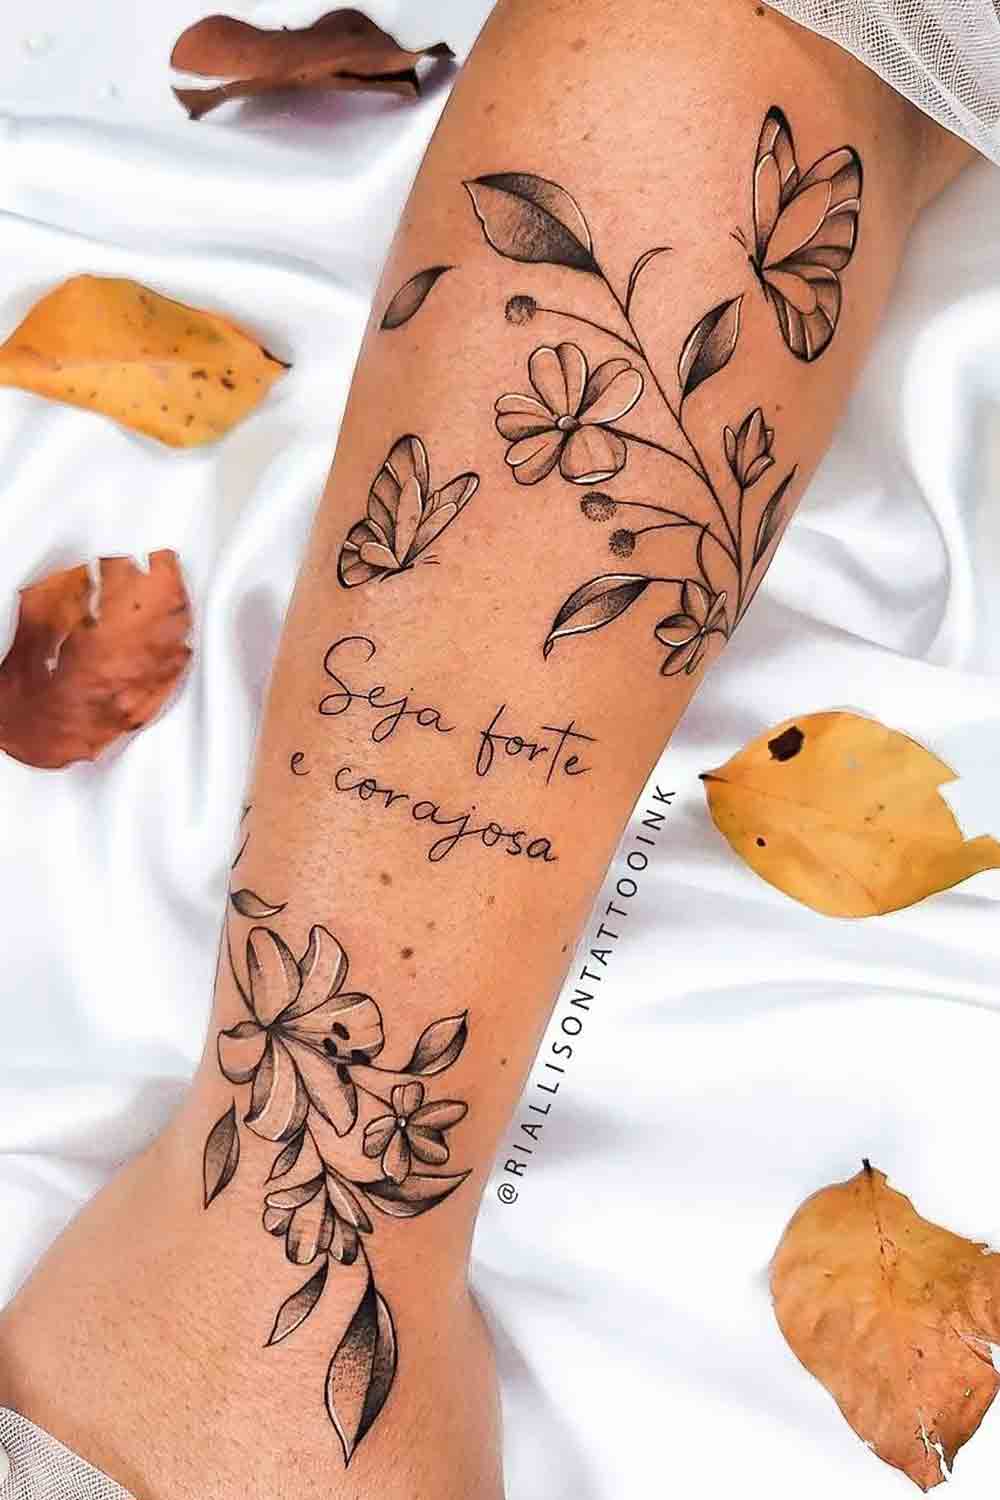 tatuagem-feminina-no-braco-escrito-seja-forte-e-corajosa-com-flores-e-borboletas 